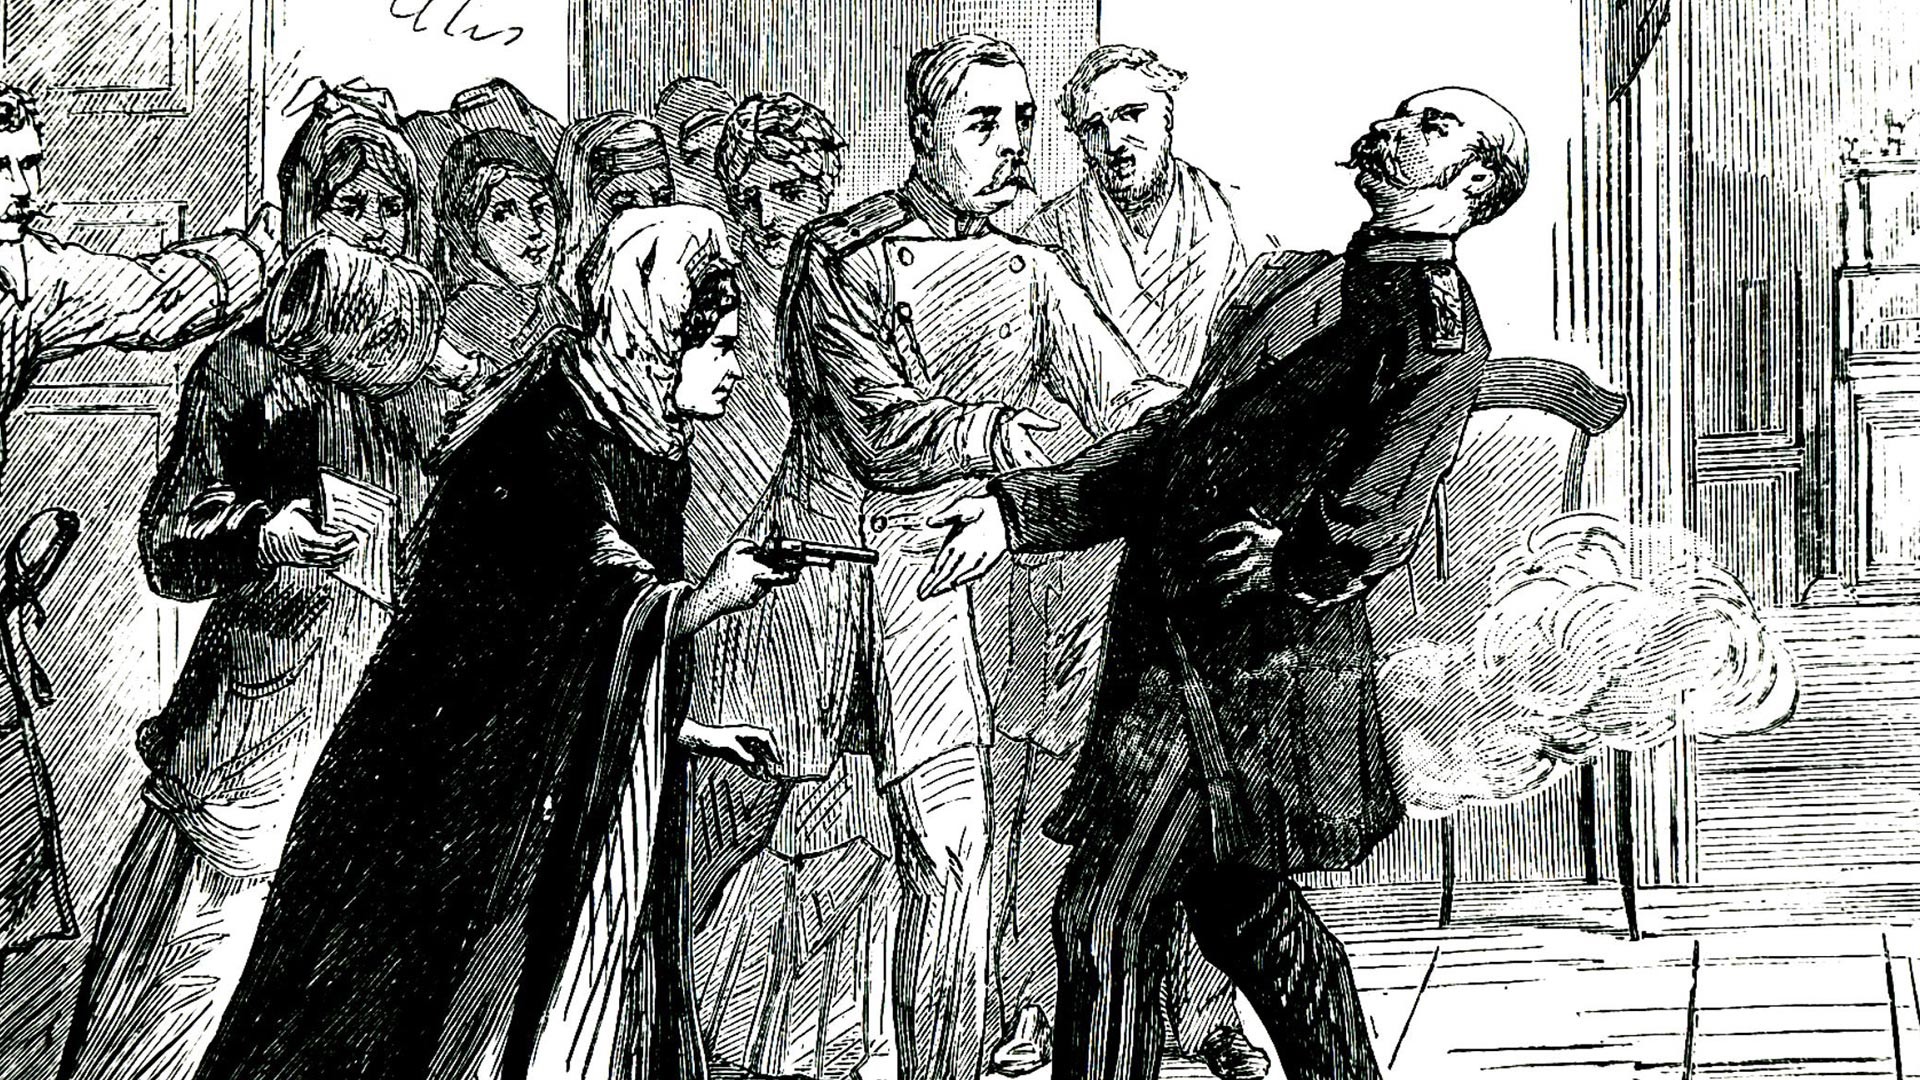 Poskus atentata ruske revolucionarke Vere Zasulič (1849-1919) na načelnika peterburške policije Fjodorja Trepova (1803-1889). Na sojenju jo je porota oprostila.